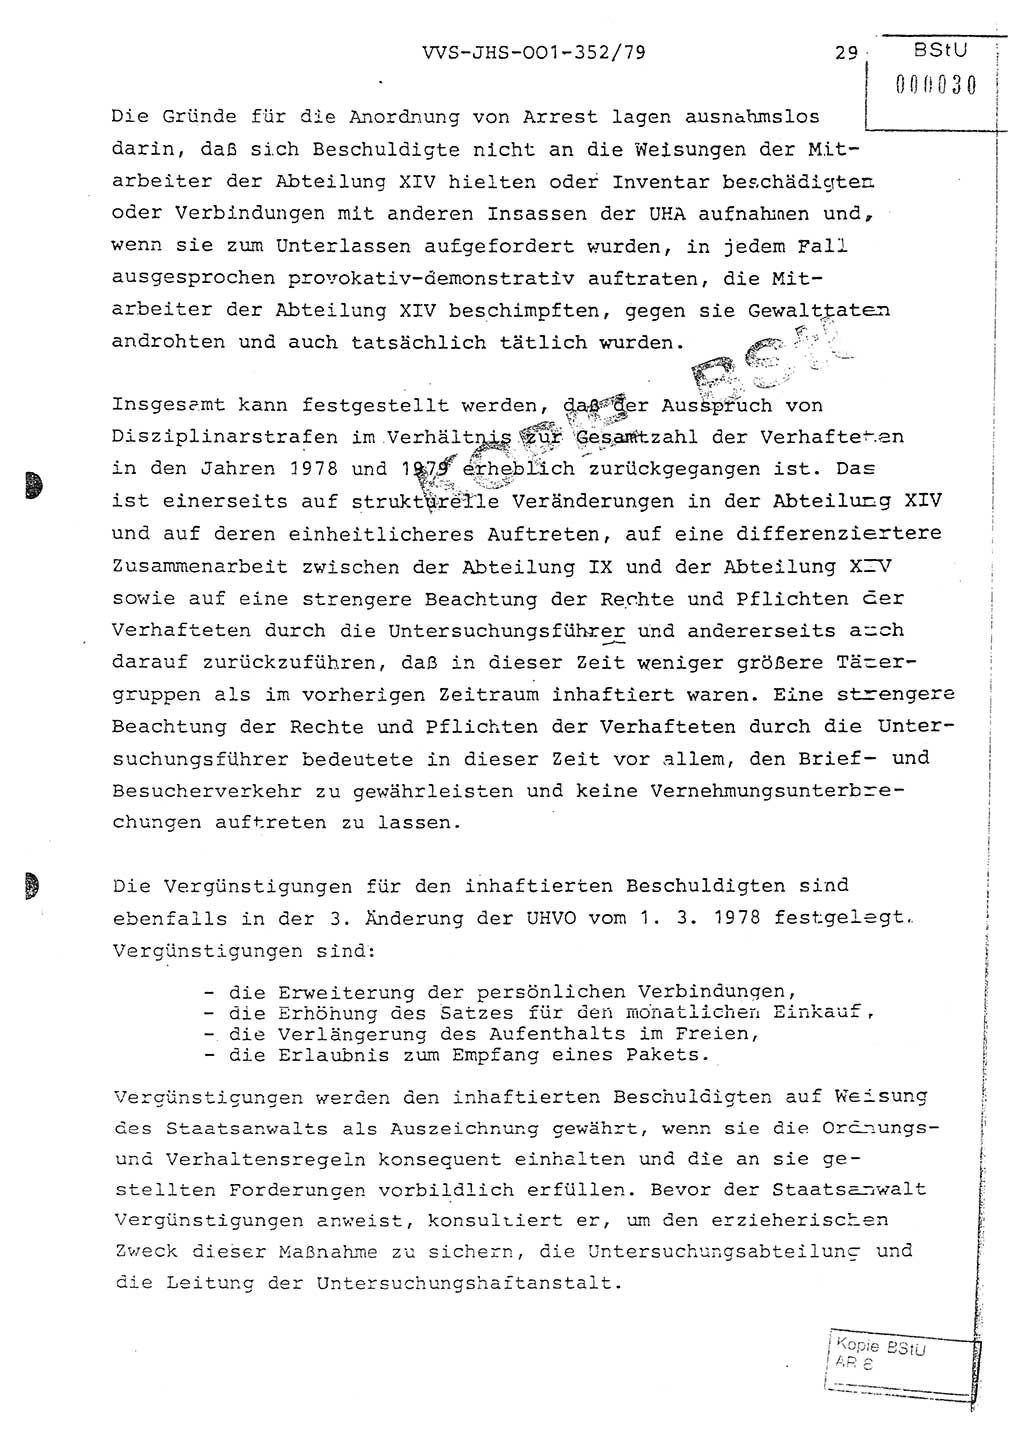 Diplomarbeit Hauptmann Peter Wittum (BV Bln. Abt. HA Ⅸ), Ministerium für Staatssicherheit (MfS) [Deutsche Demokratische Republik (DDR)], Juristische Hochschule (JHS), Vertrauliche Verschlußsache (VVS) o001-352/79, Potsdam 1979, Seite 29 (Dipl.-Arb. MfS DDR JHS VVS o001-352/79 1979, S. 29)